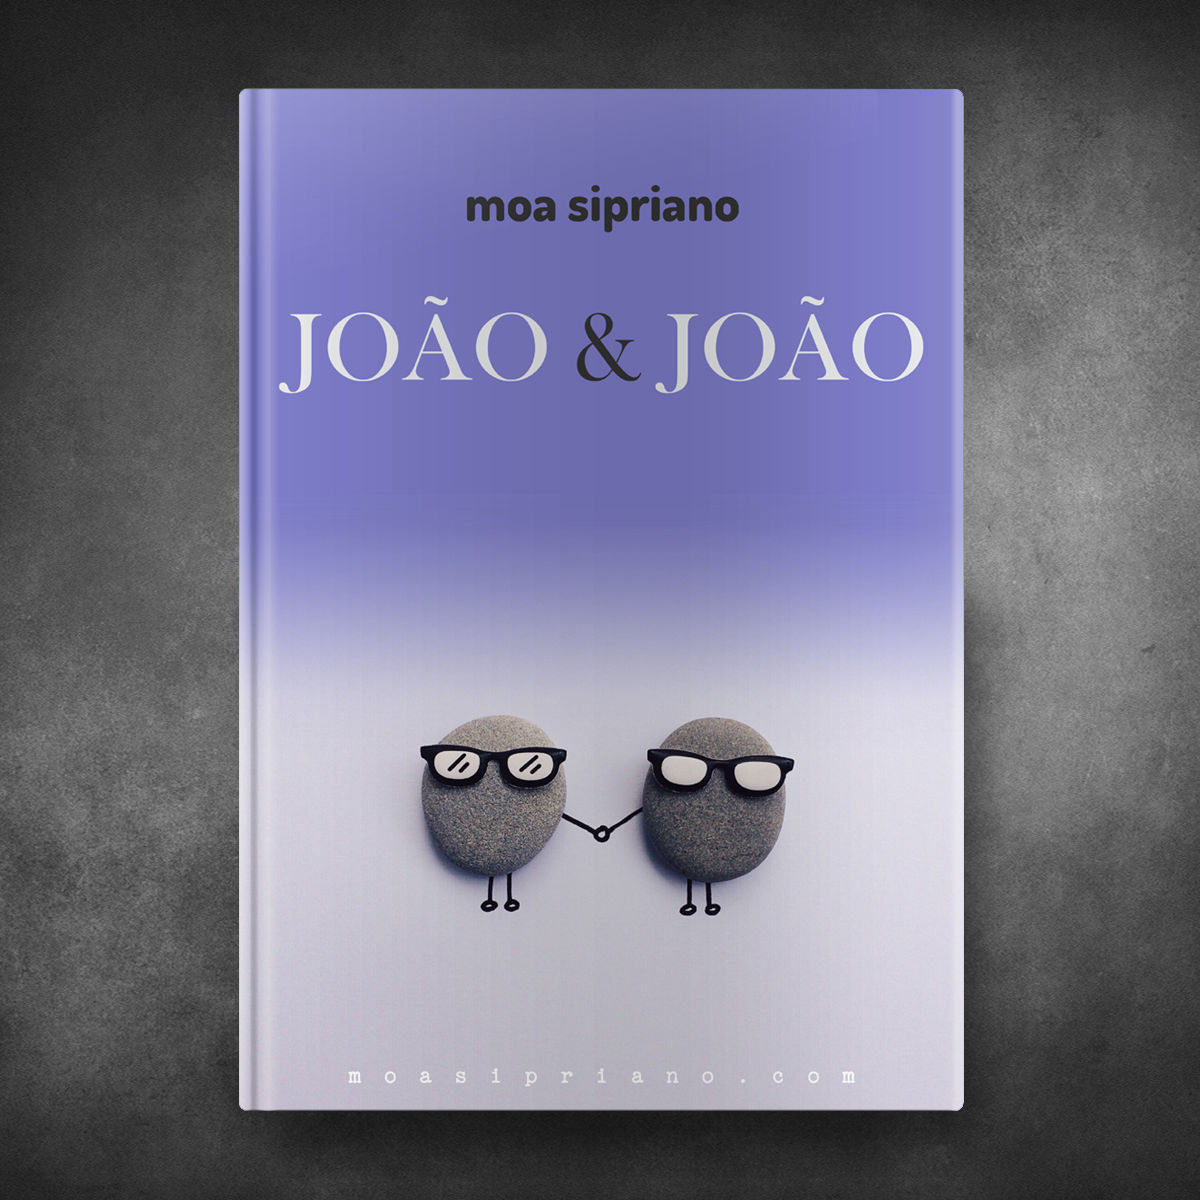 João & João - Moa Sipriano